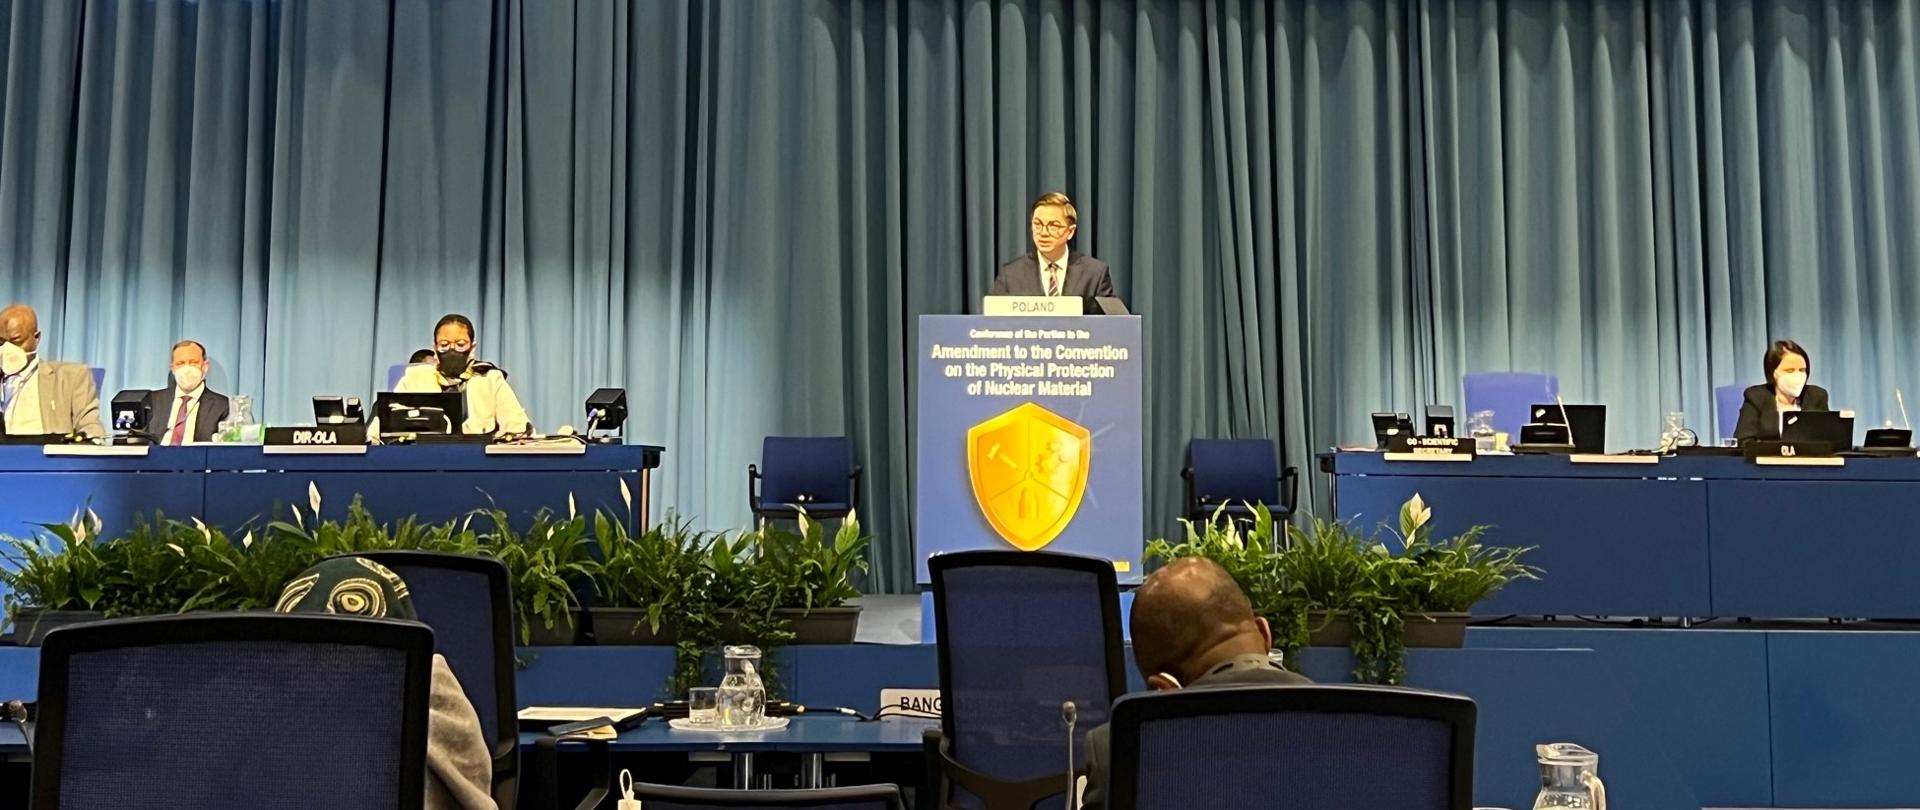 Prezes PAA na konferencji Międzynarodowej Agencji Energii Atomowej w Wiedniu. Dr Łukasz Młynarkiewicz stoi za granatowym pulpitem. Po obu stronach za niebieskimi stołami siedzą uczestnicy konferencji. W tle szara kotara.